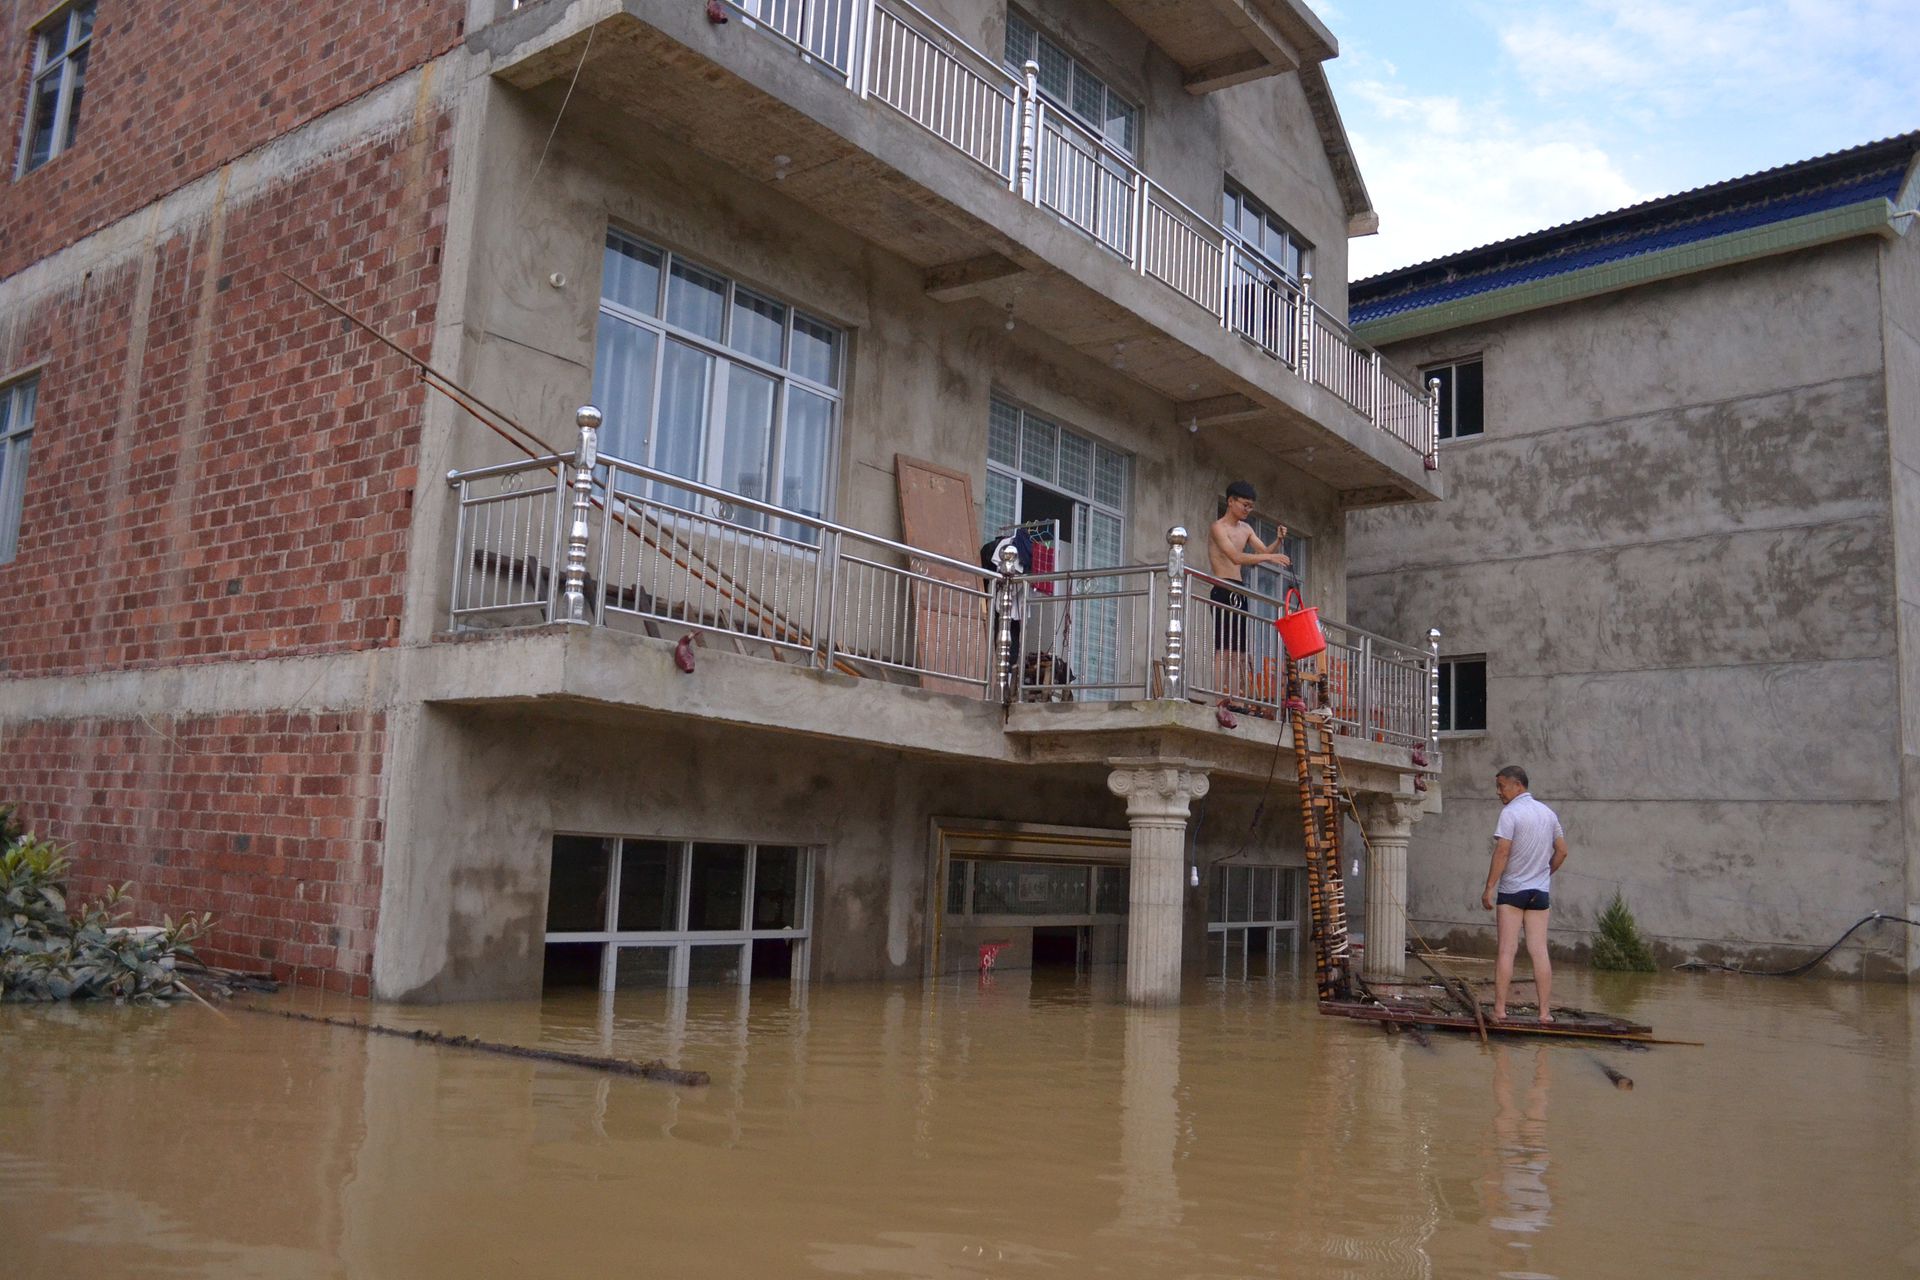 随着中国农村经济的发展，村民住房质量大幅提高，钢筋混净土的框架式楼房已经十分普遍。这避免了因洪水导致的房屋倒塌损失，大大降低了人员伤亡。图为7月12日，江西上饶鄱阳县村民正在从二楼阳台返回家中。  （人民视觉）